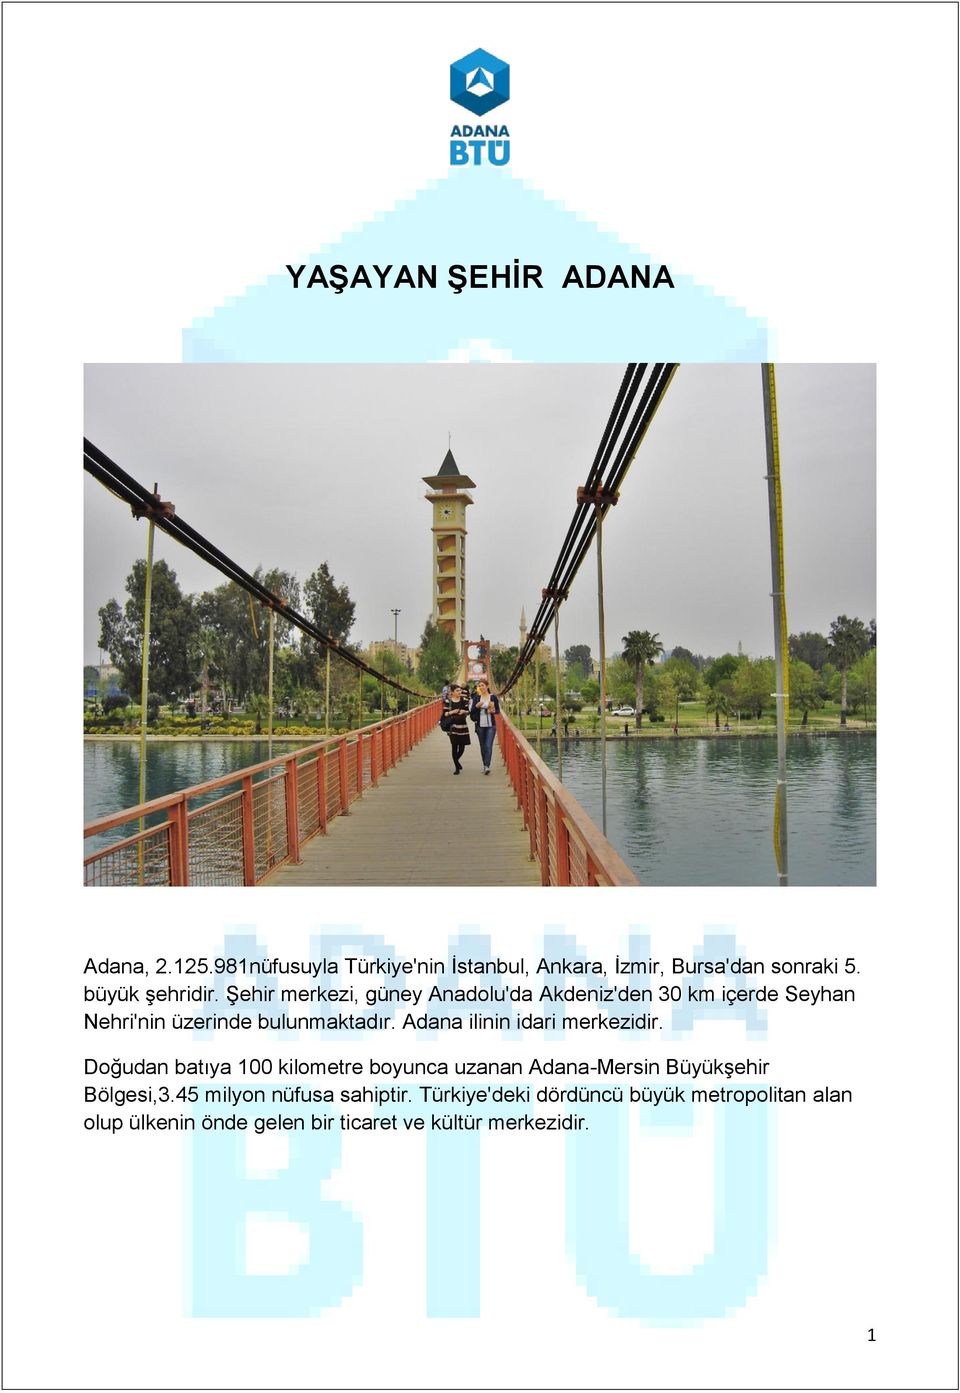 Adana ilinin idari merkezidir. Doğudan batıya 100 kilometre boyunca uzanan Adana-Mersin Büyükşehir Bölgesi,3.